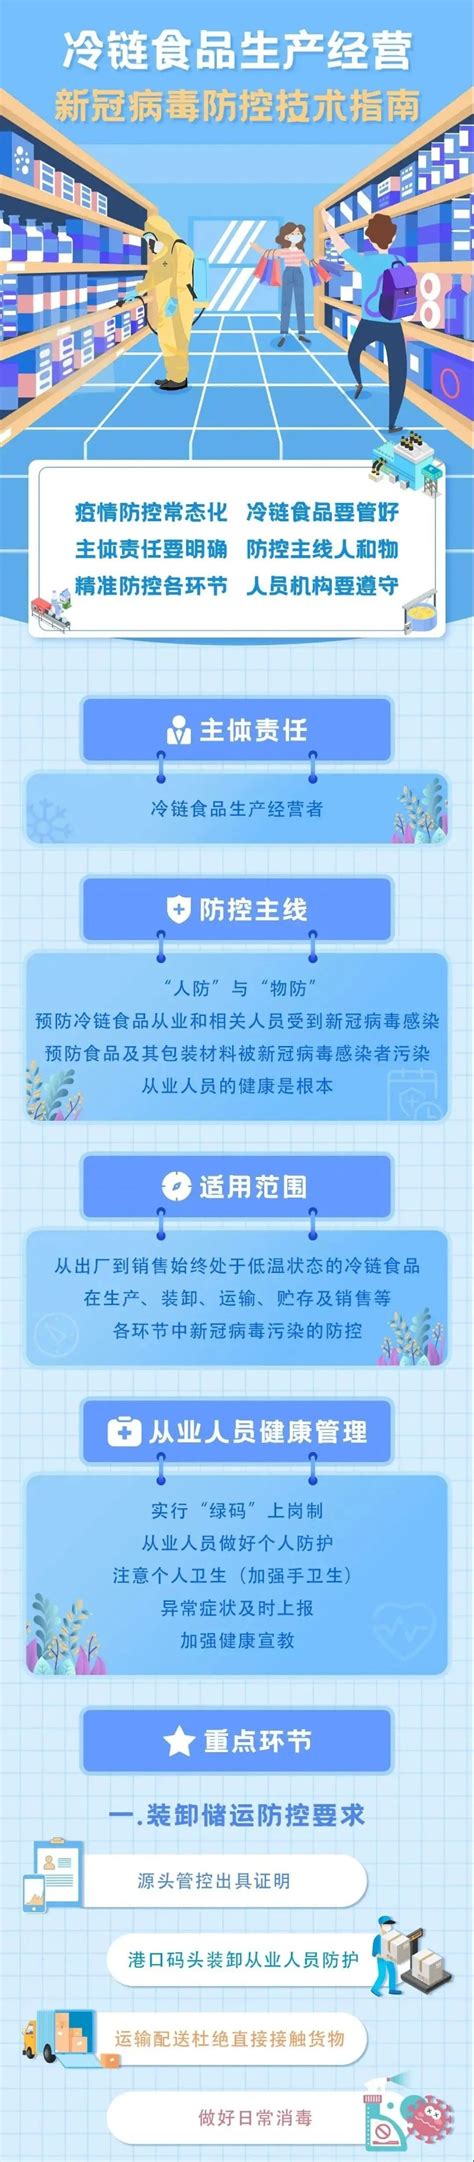 科普 | 冷链食品疫情防控小知识 - 权威发布 - 陕西网